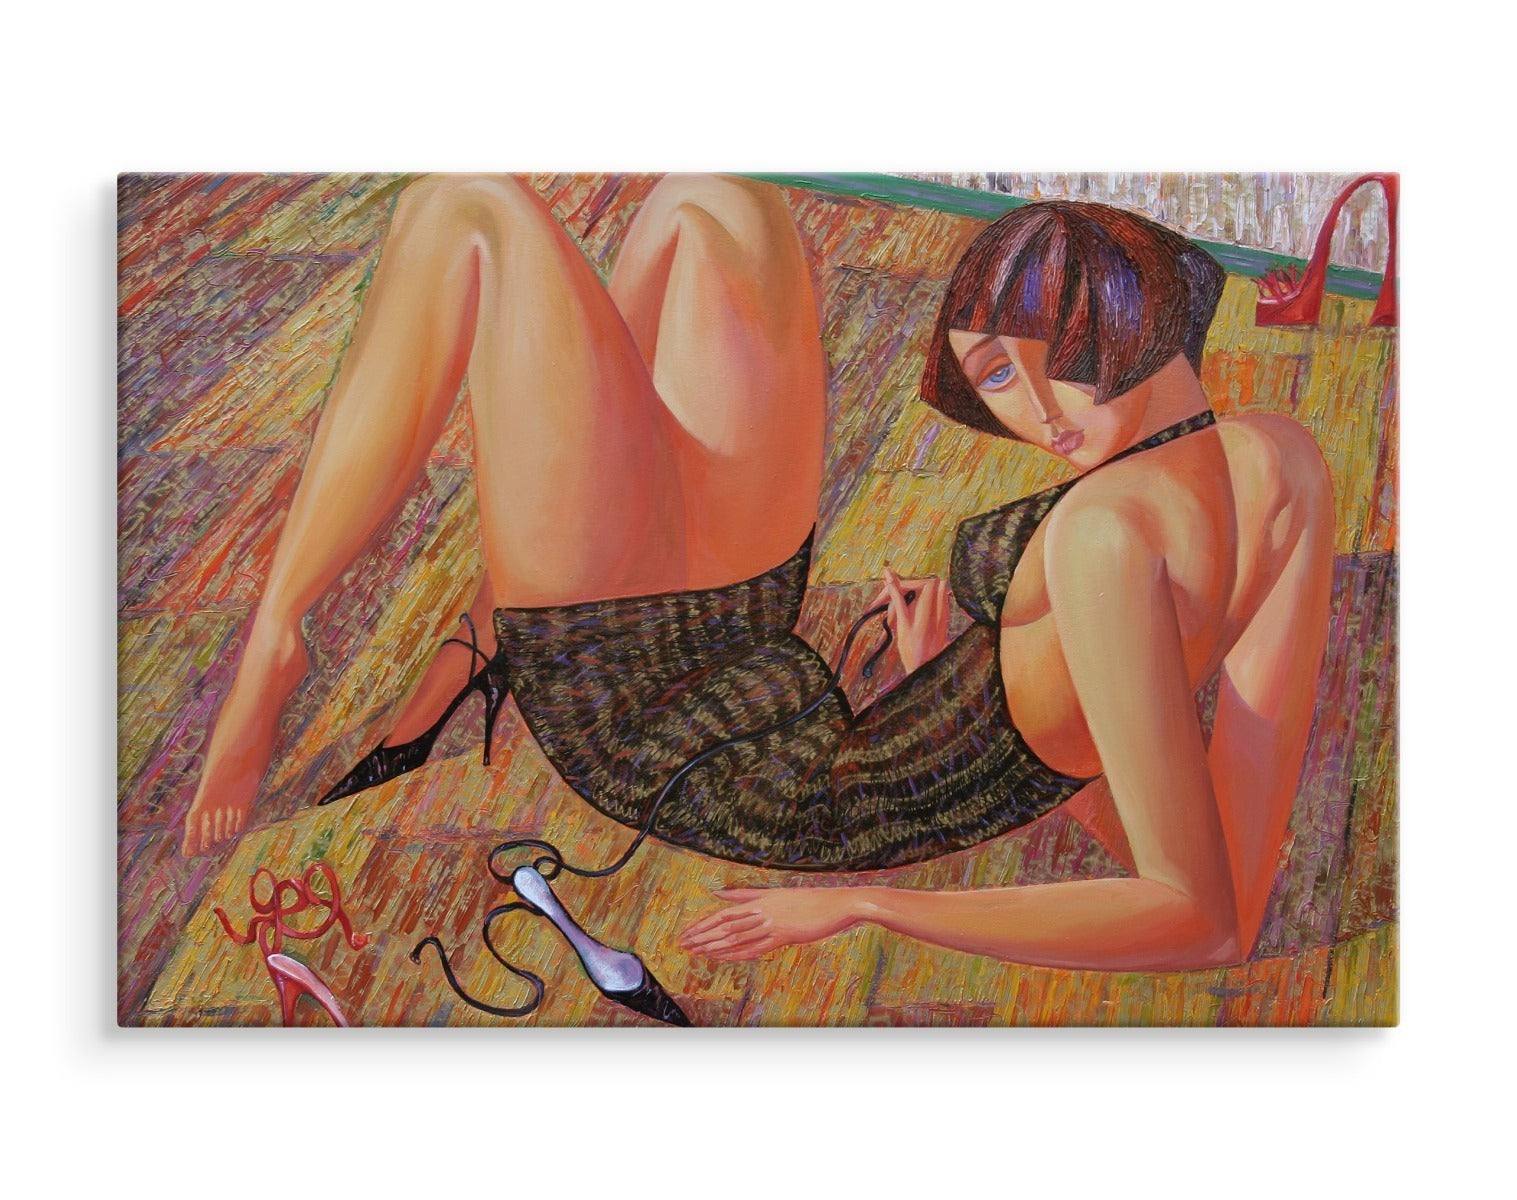 Et maleri av en kvinne i en abstrakt utgave